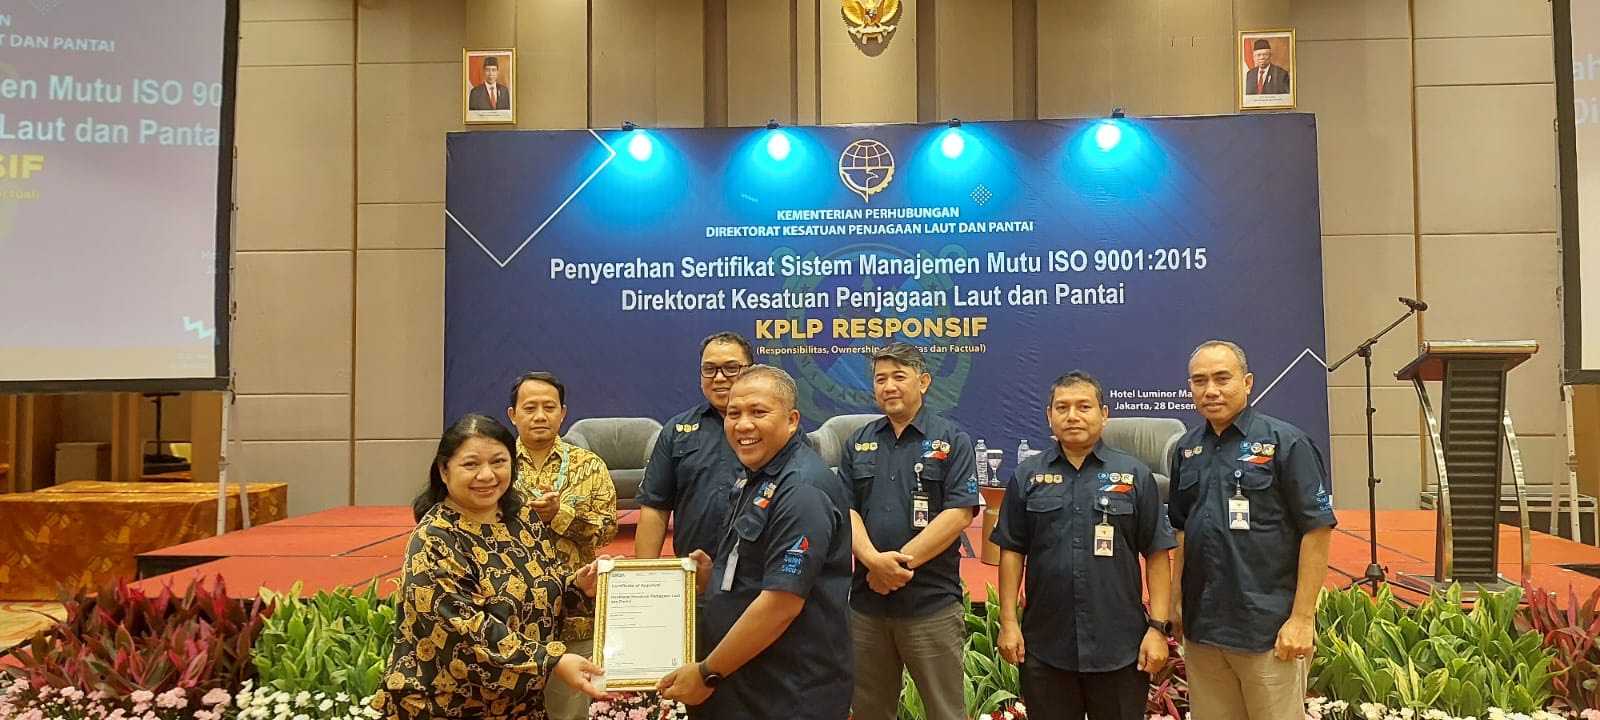 Direktorat KPLP Raih Setifikat ISO 9001:2015